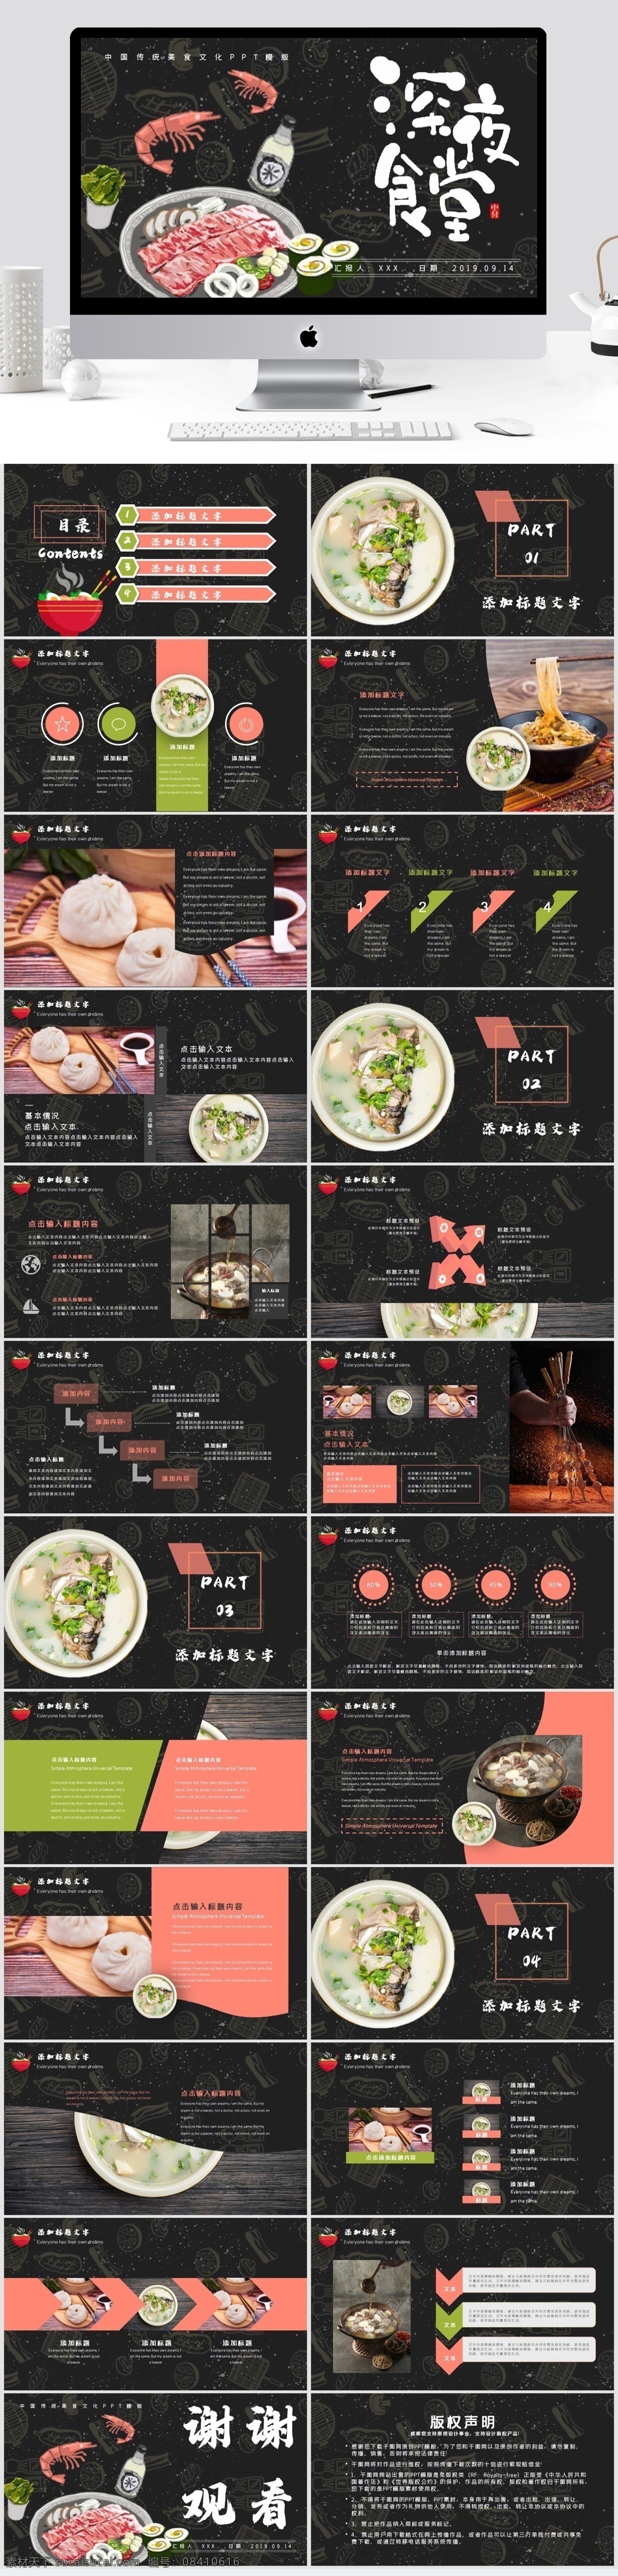 中国 传统 美食文化 模版 美食 文化 深夜 食堂 工作汇报 美食ppt